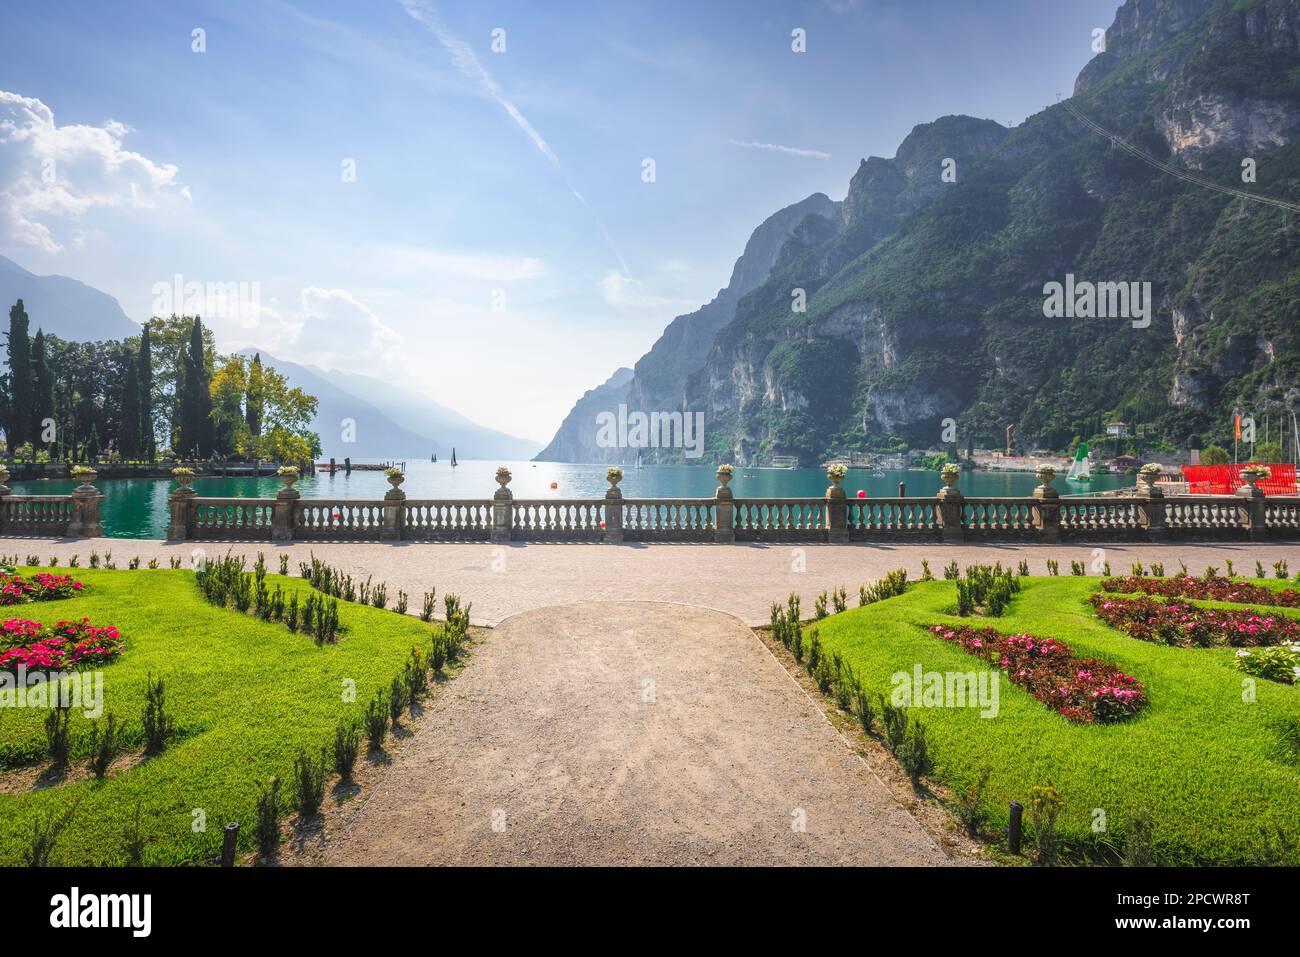 Jardins d'un parc public et d'une terrasse sur le lac de Garde. Riva del Garda, Trentin, Italie, Europe. Banque D'Images